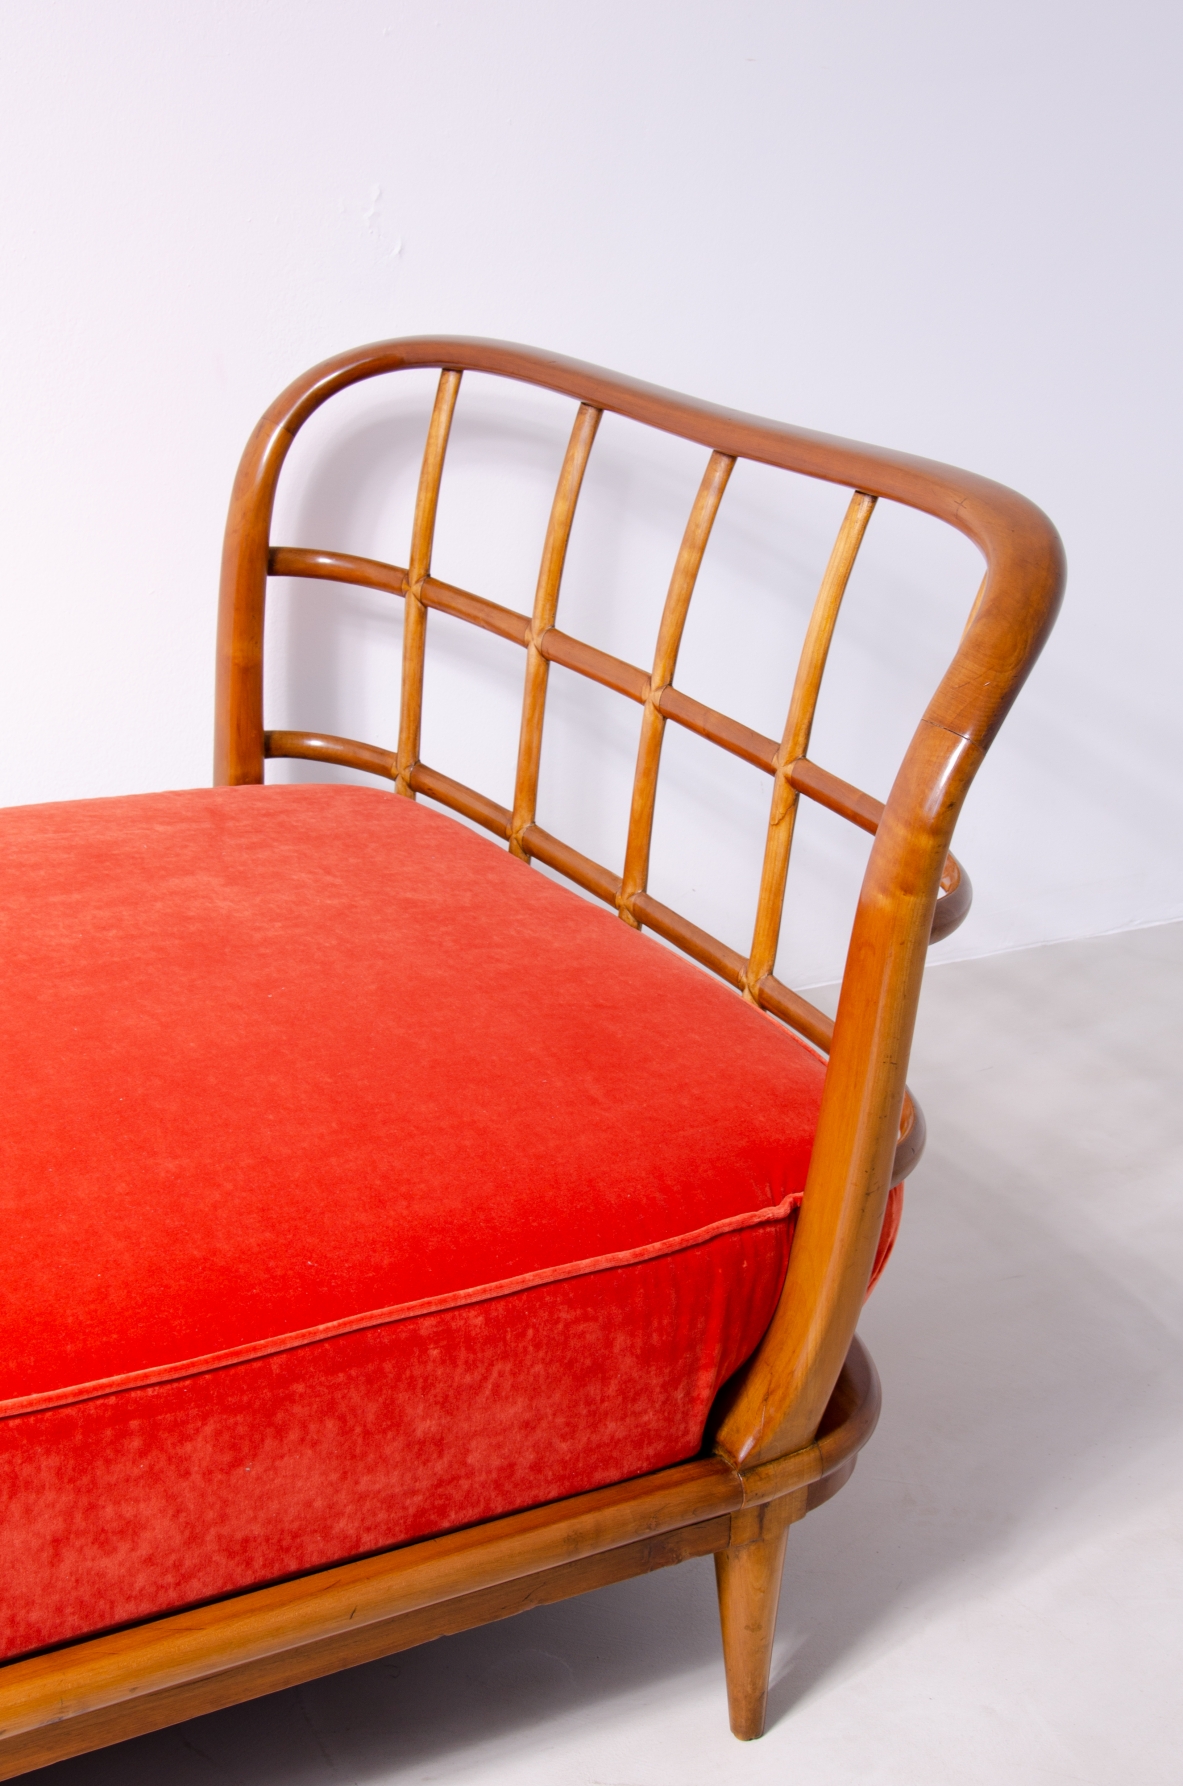 Guglielmo Ulrich, elegante divano/letto con struttura in legno di ciliegio 1940.